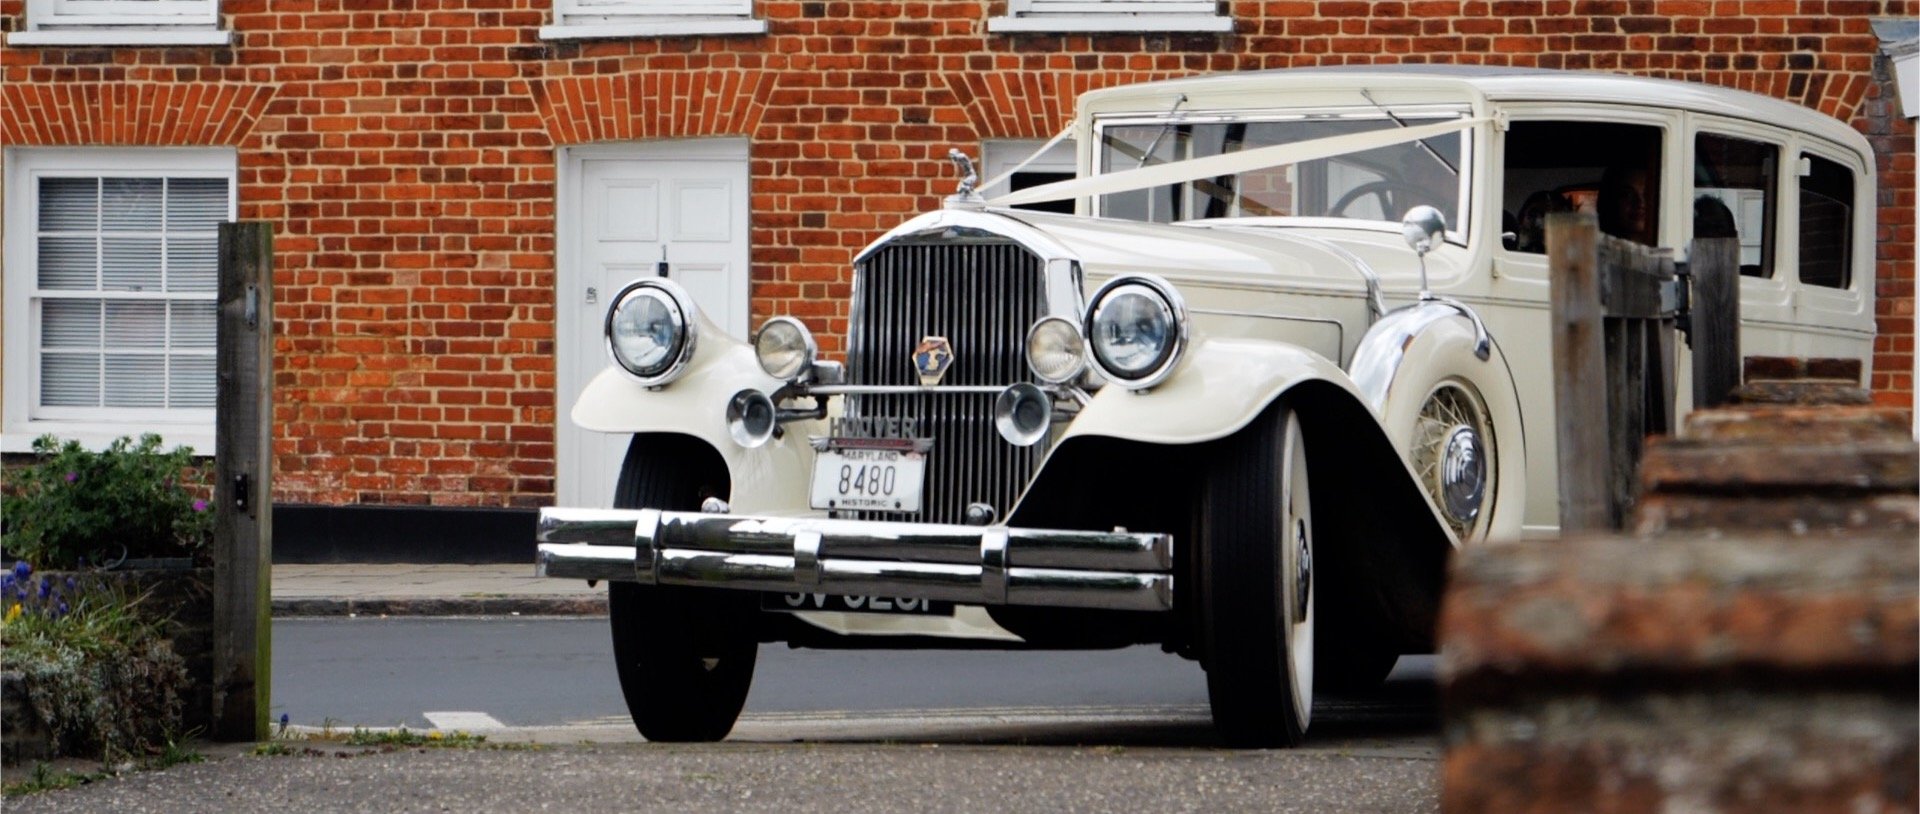 Rolls Royce wedding car Essex videos.jpg